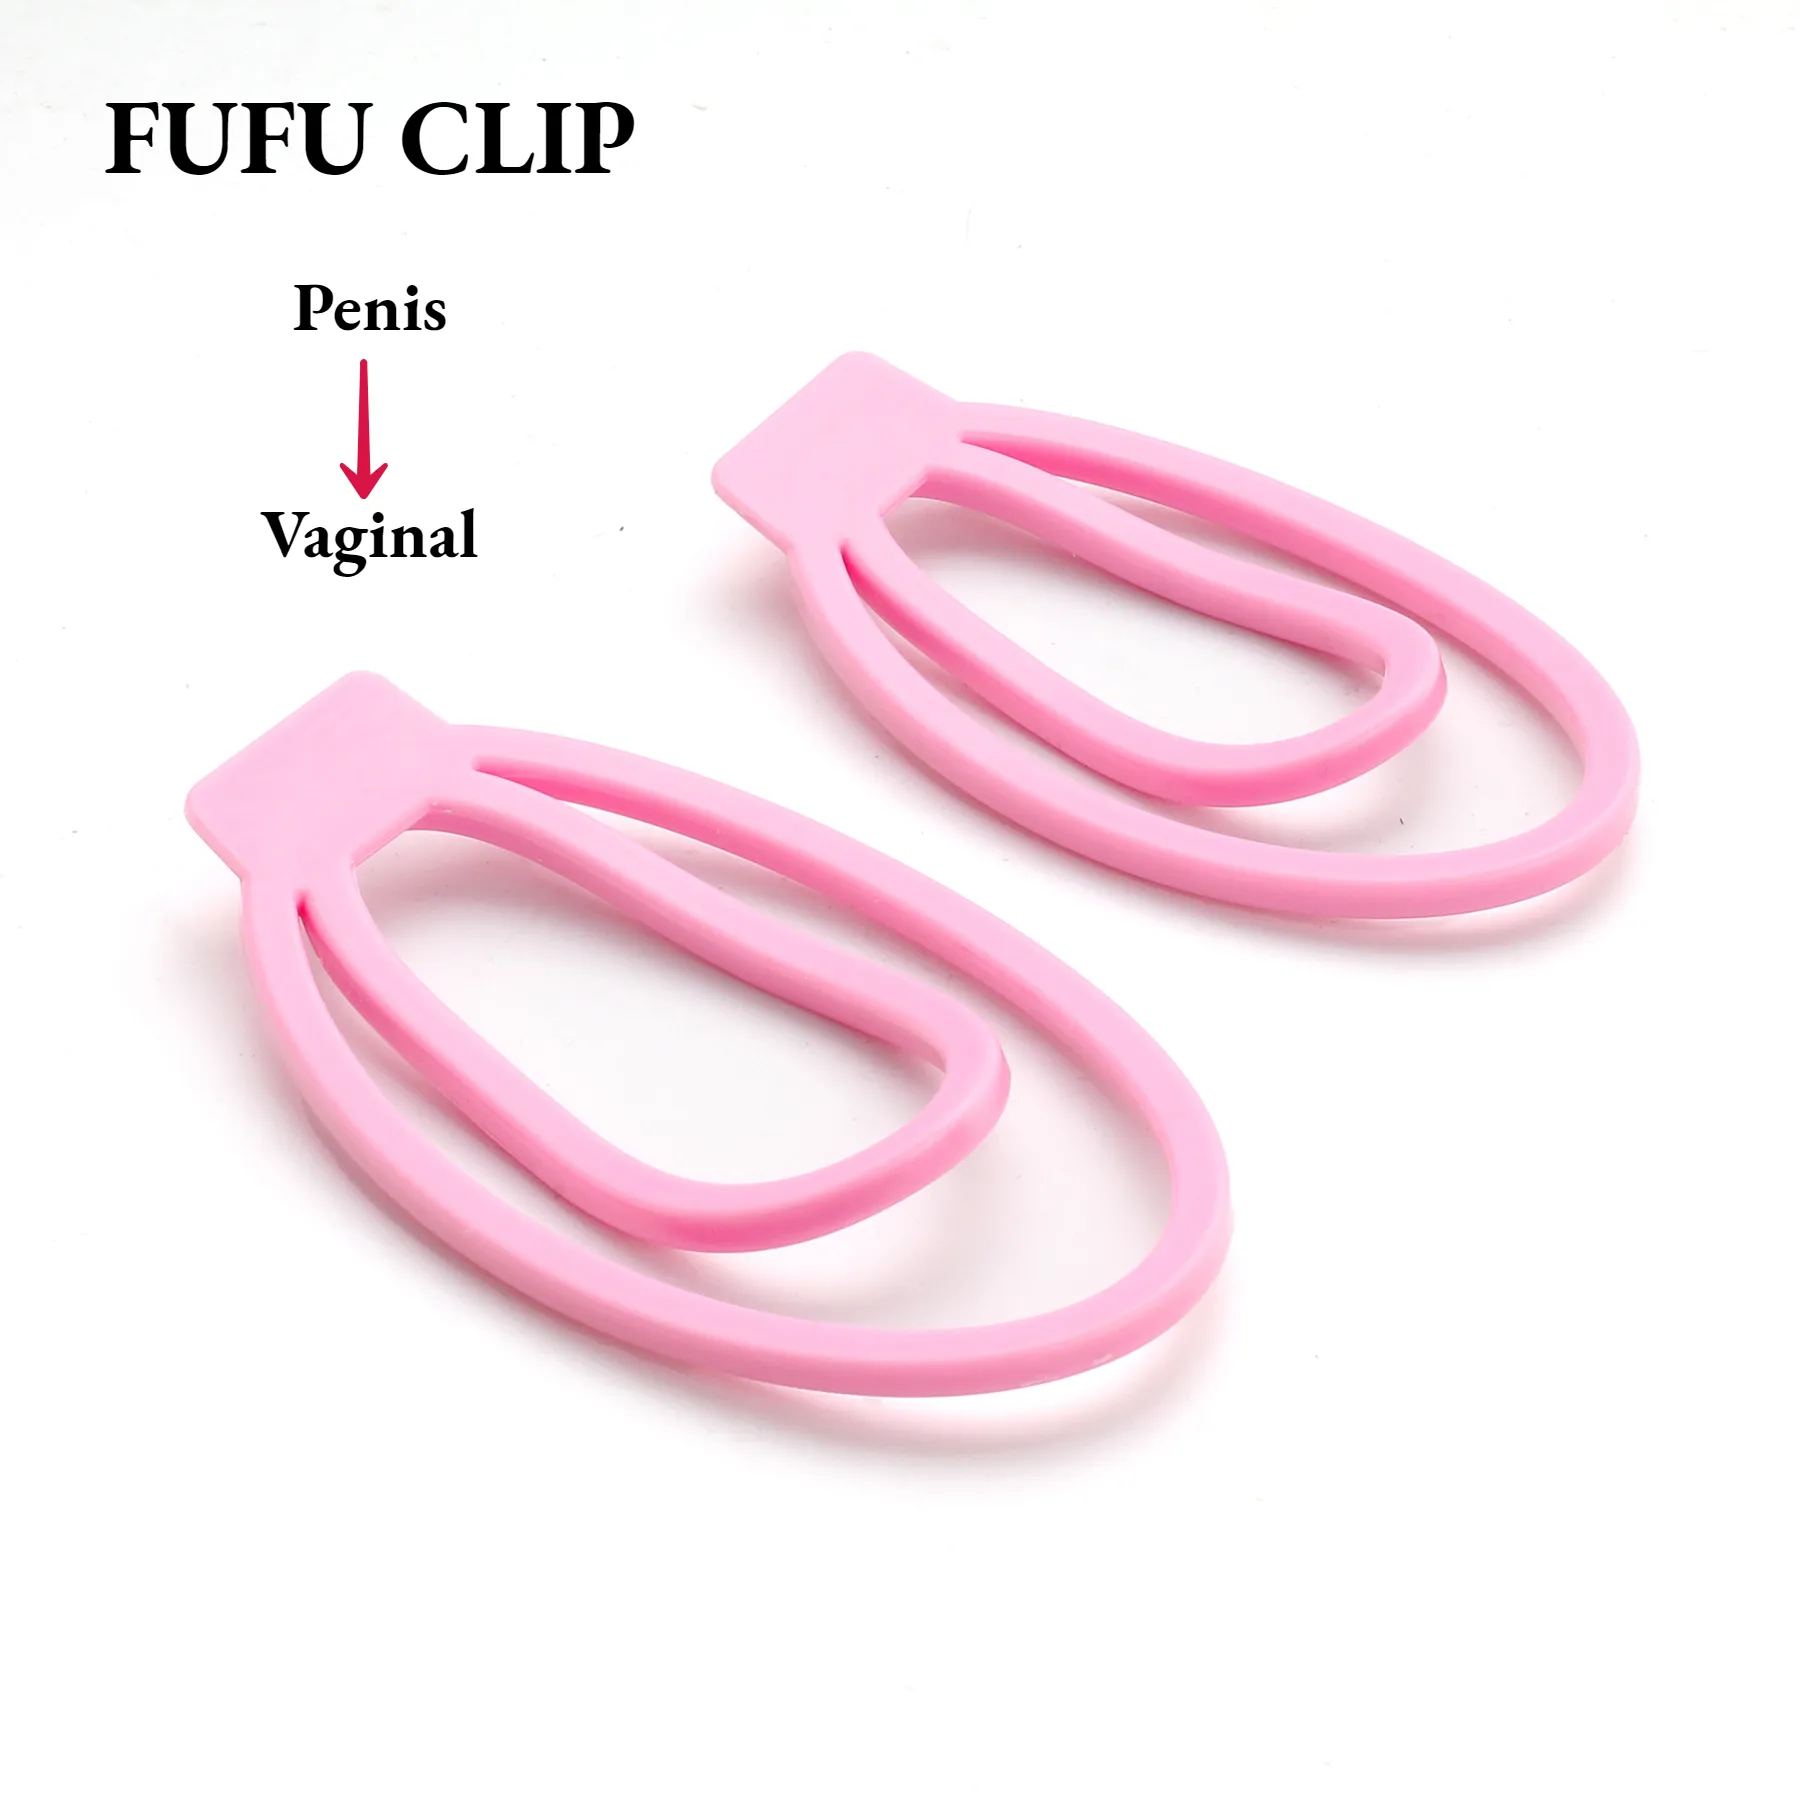 Männliches Penis-Trainings gerät Leichter Kunststoff-Trainings clip Hahn käfig Sexspielzeug für Sissy Bondage Lock Keuschheit mit dem Fufu-Clip